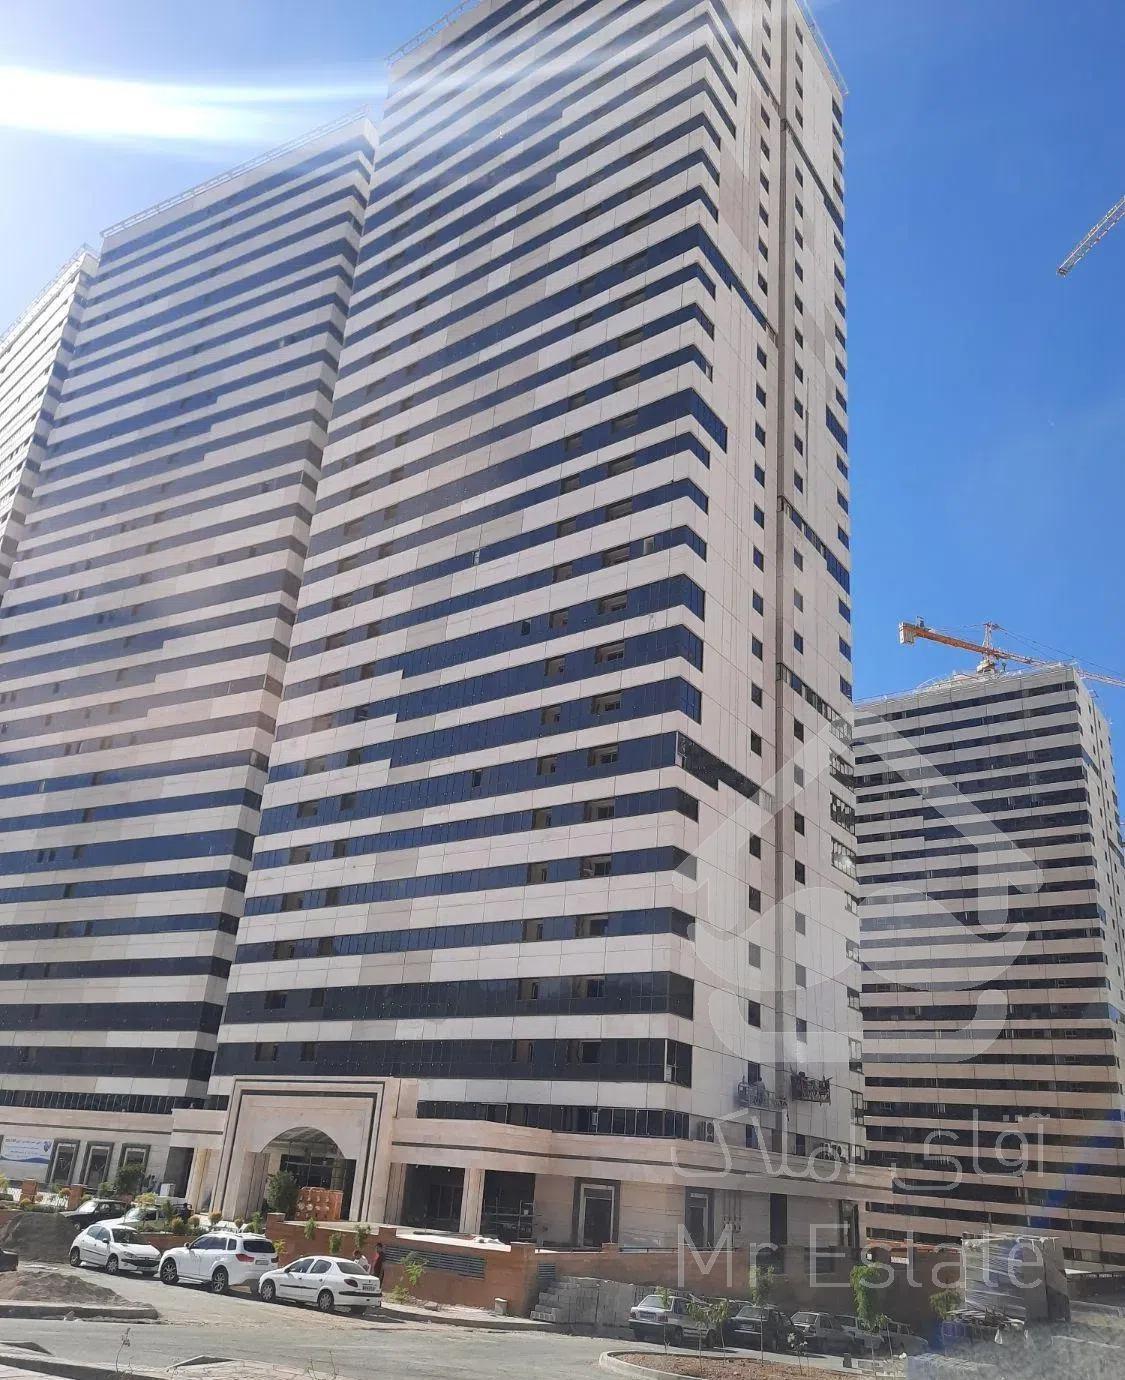 اپارتمان ۱۰۹ متر برج هوافضا دفتر فروش پروژه خرازی